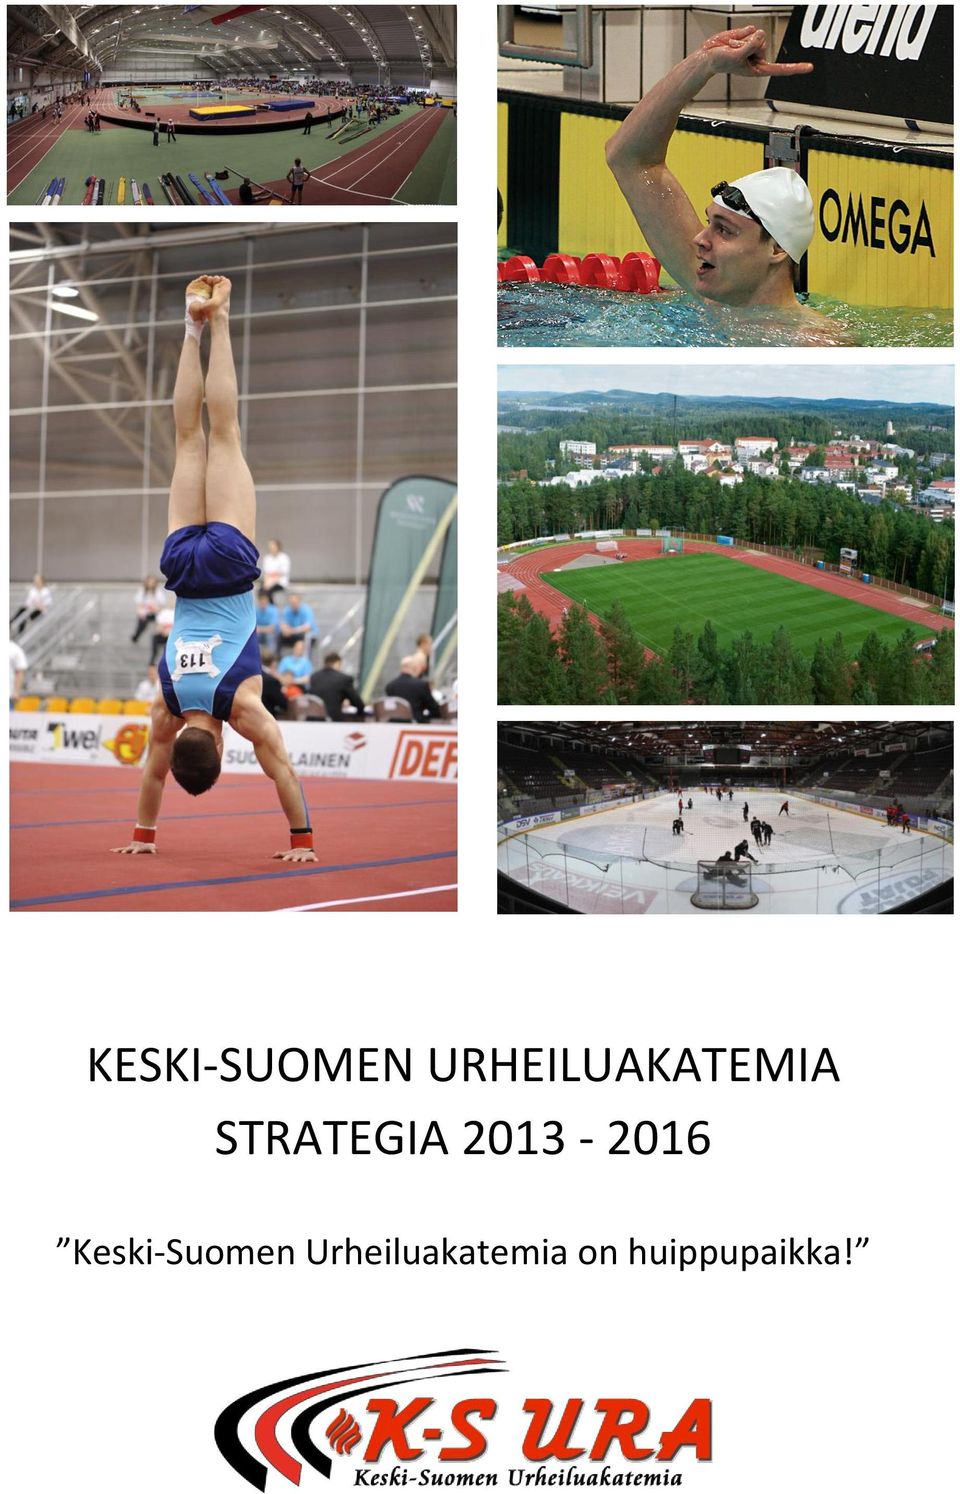 STRATEGIA 2013-2016